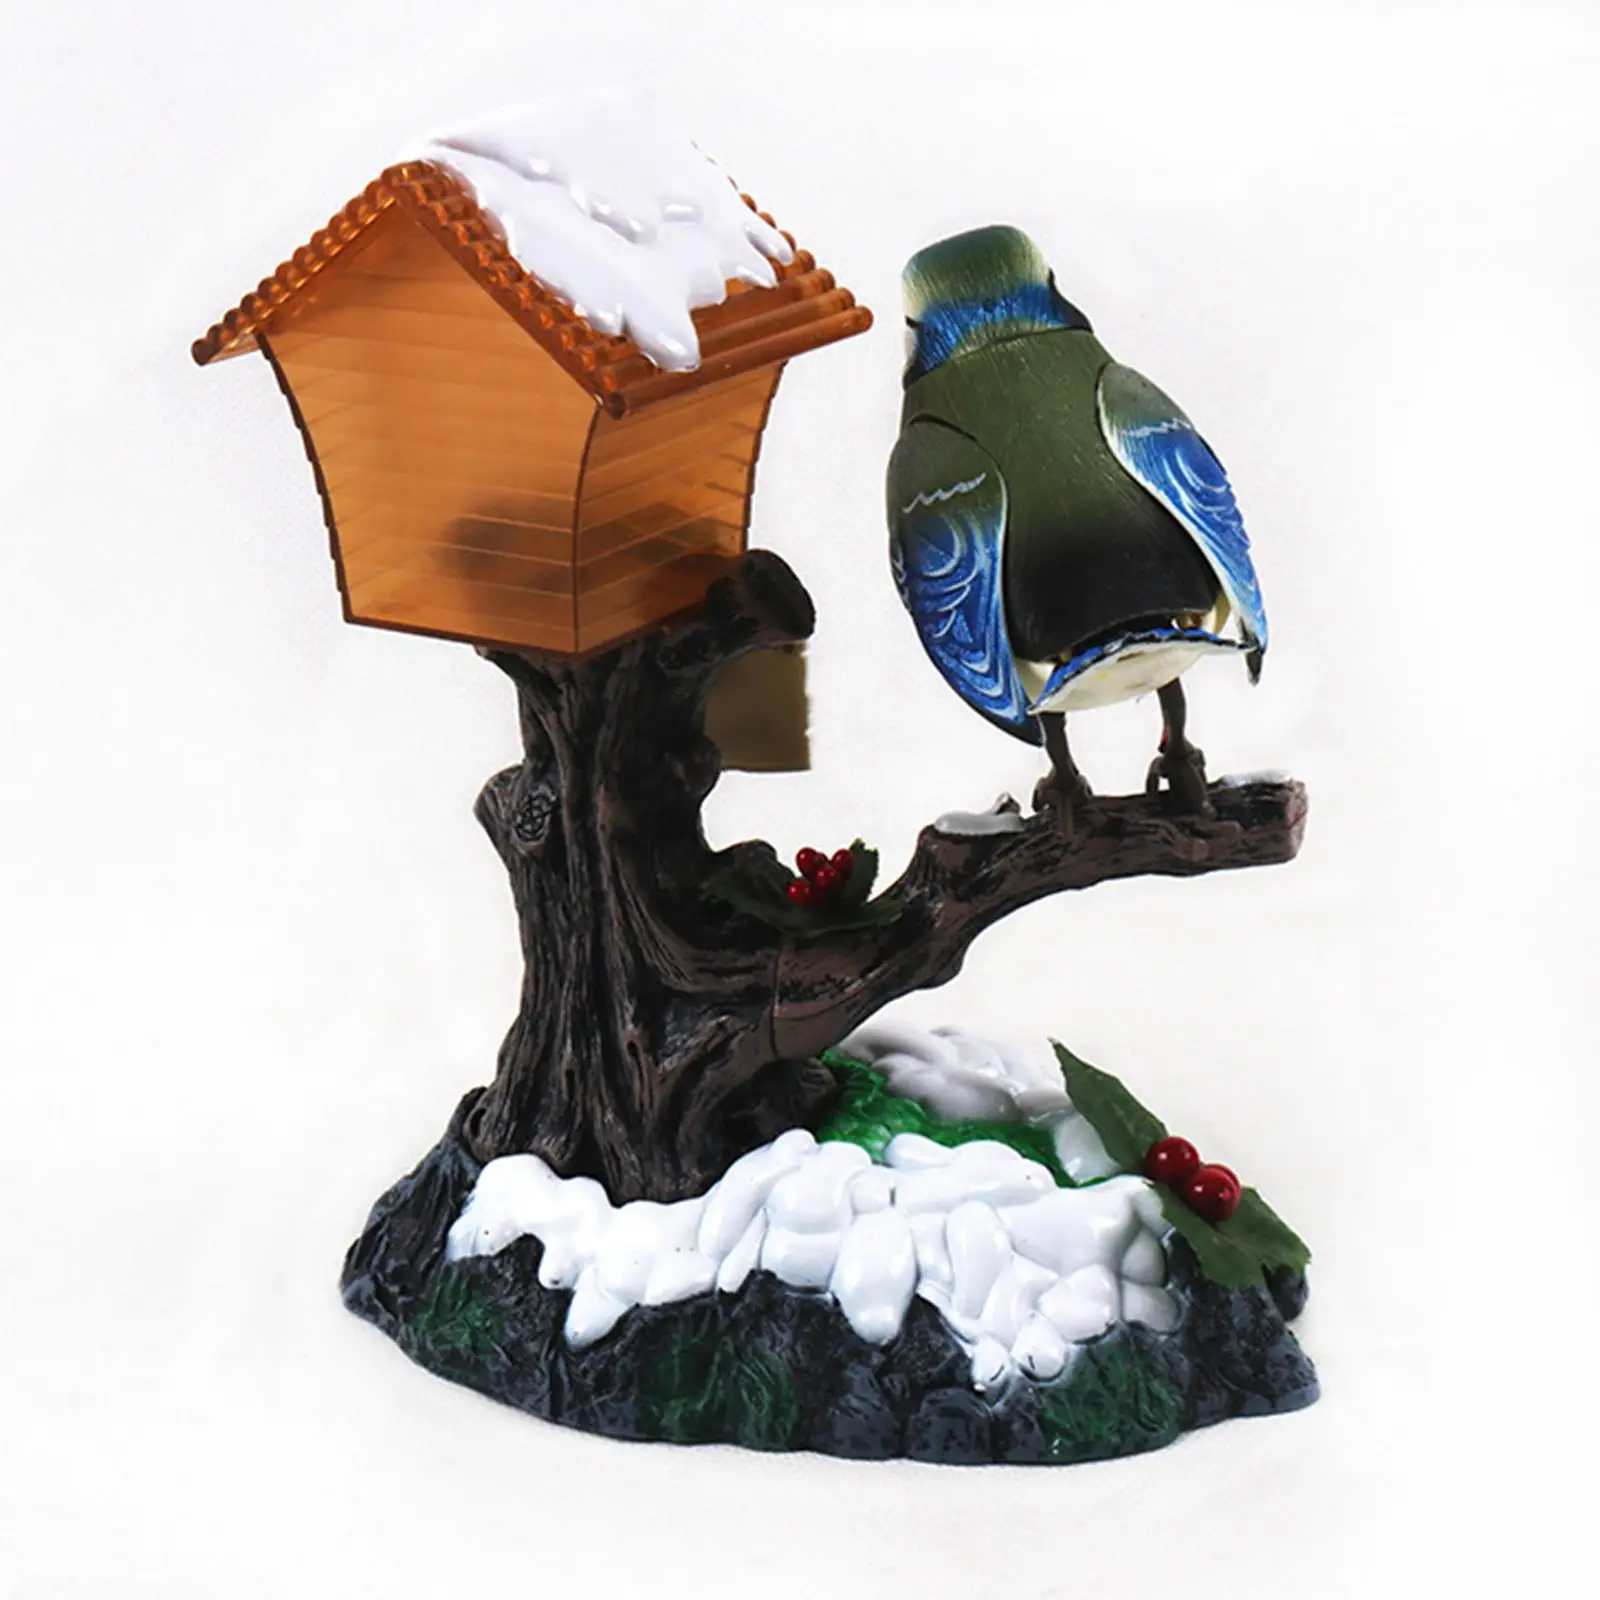 Talking Sound Control Bird Toy Office Garden Party Creative Gift Home Decor